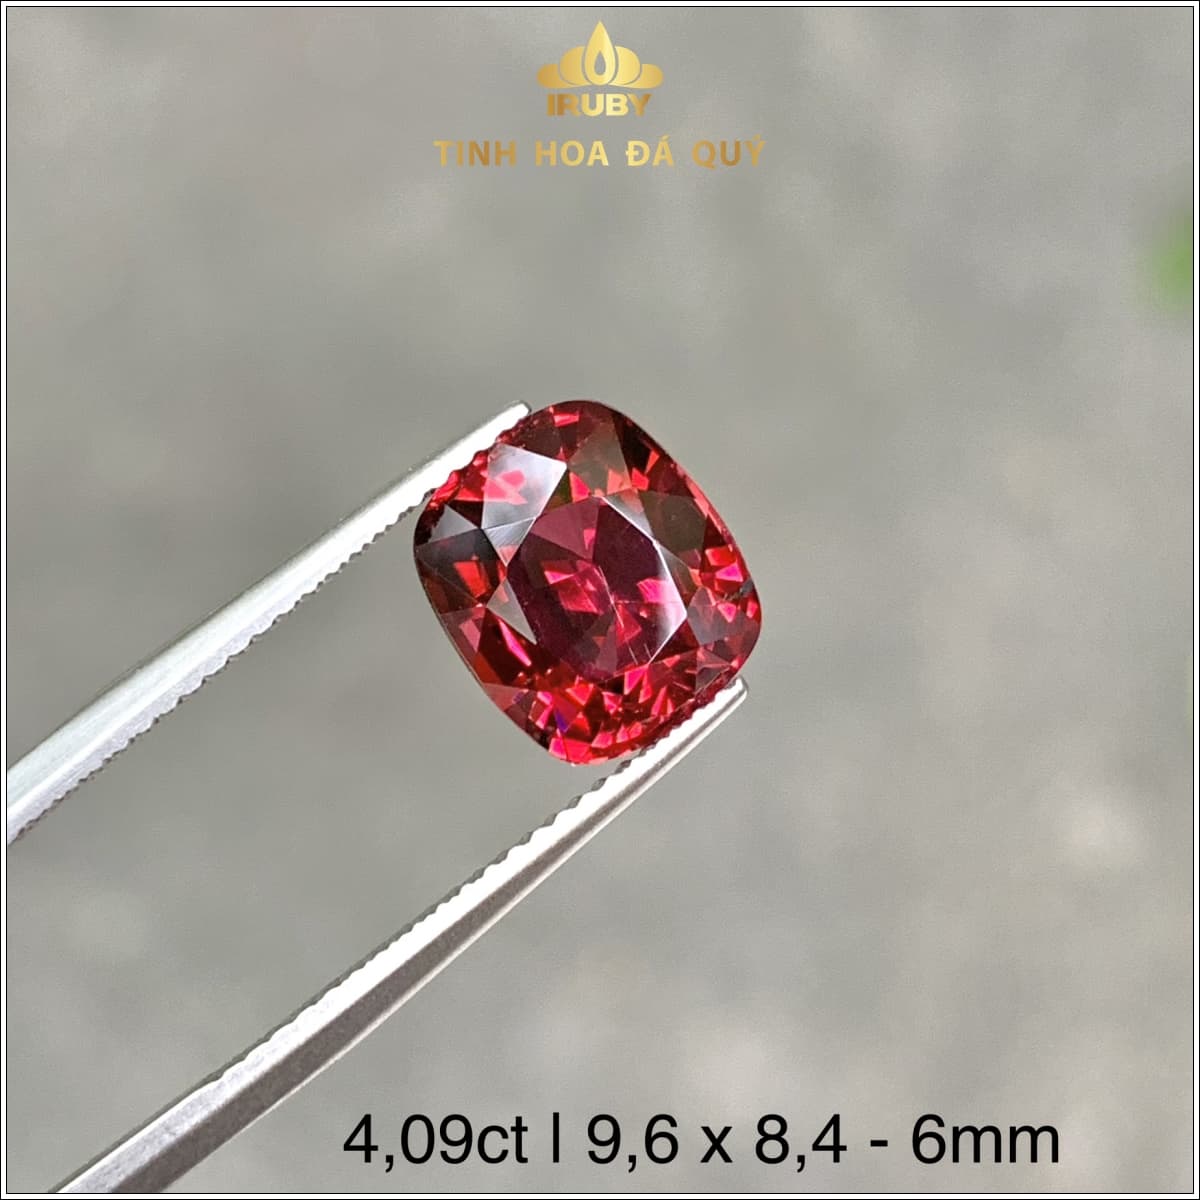 Viên đá Garnet đỏ đẹp 4,09ct IRGN86 - 2310409 hình ảnh 2